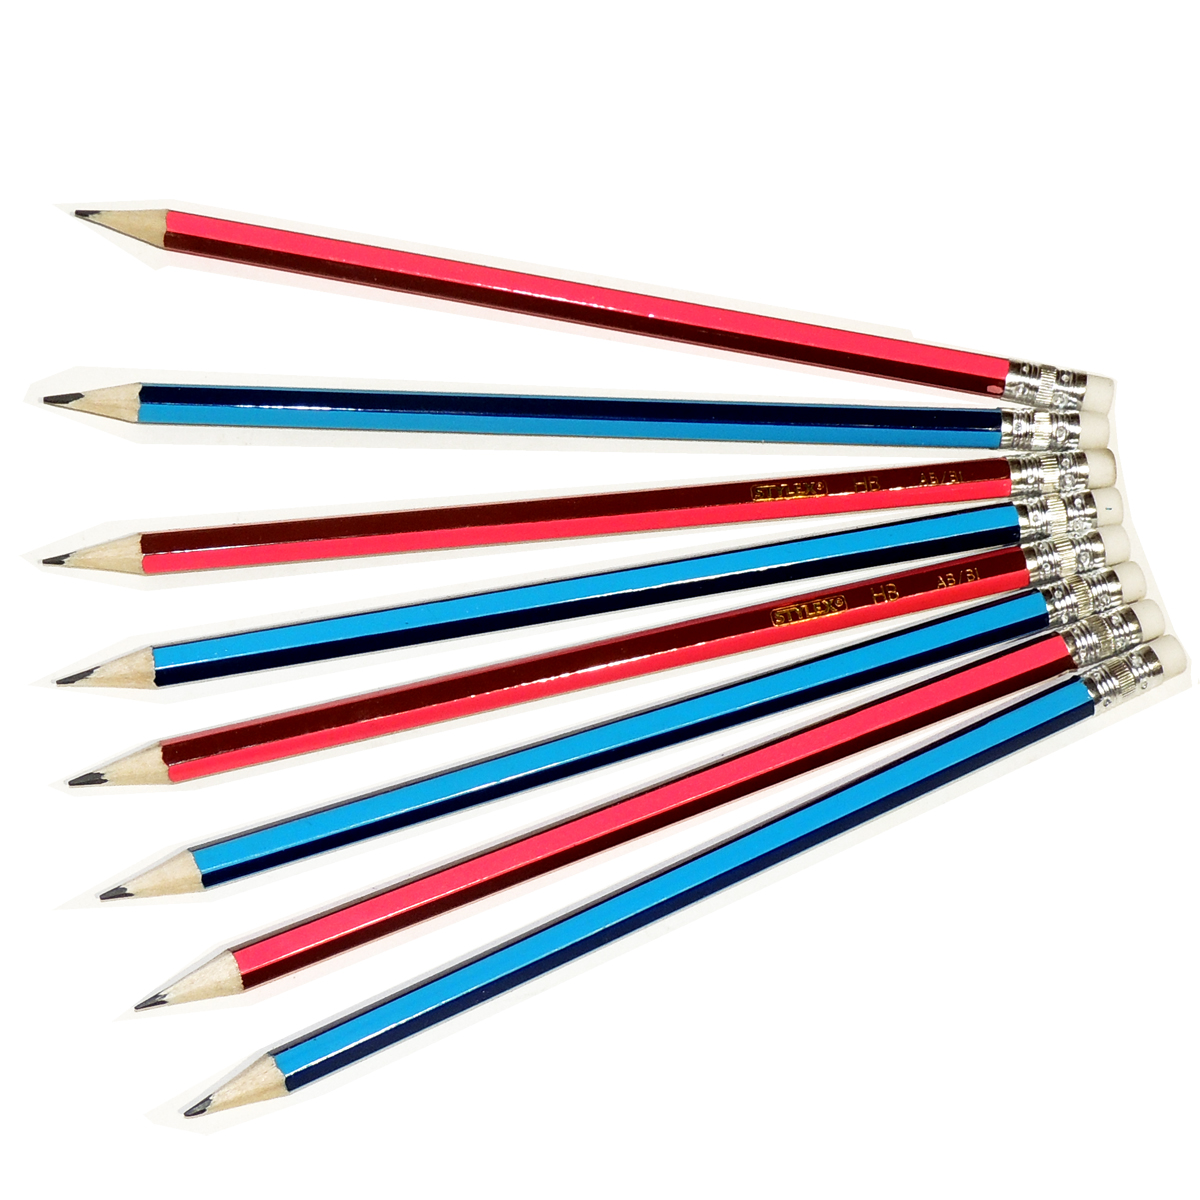 2 Bleistifte mit Radiergummi Wurst Bleistift Schulbedarf Schreibwaren Stift 